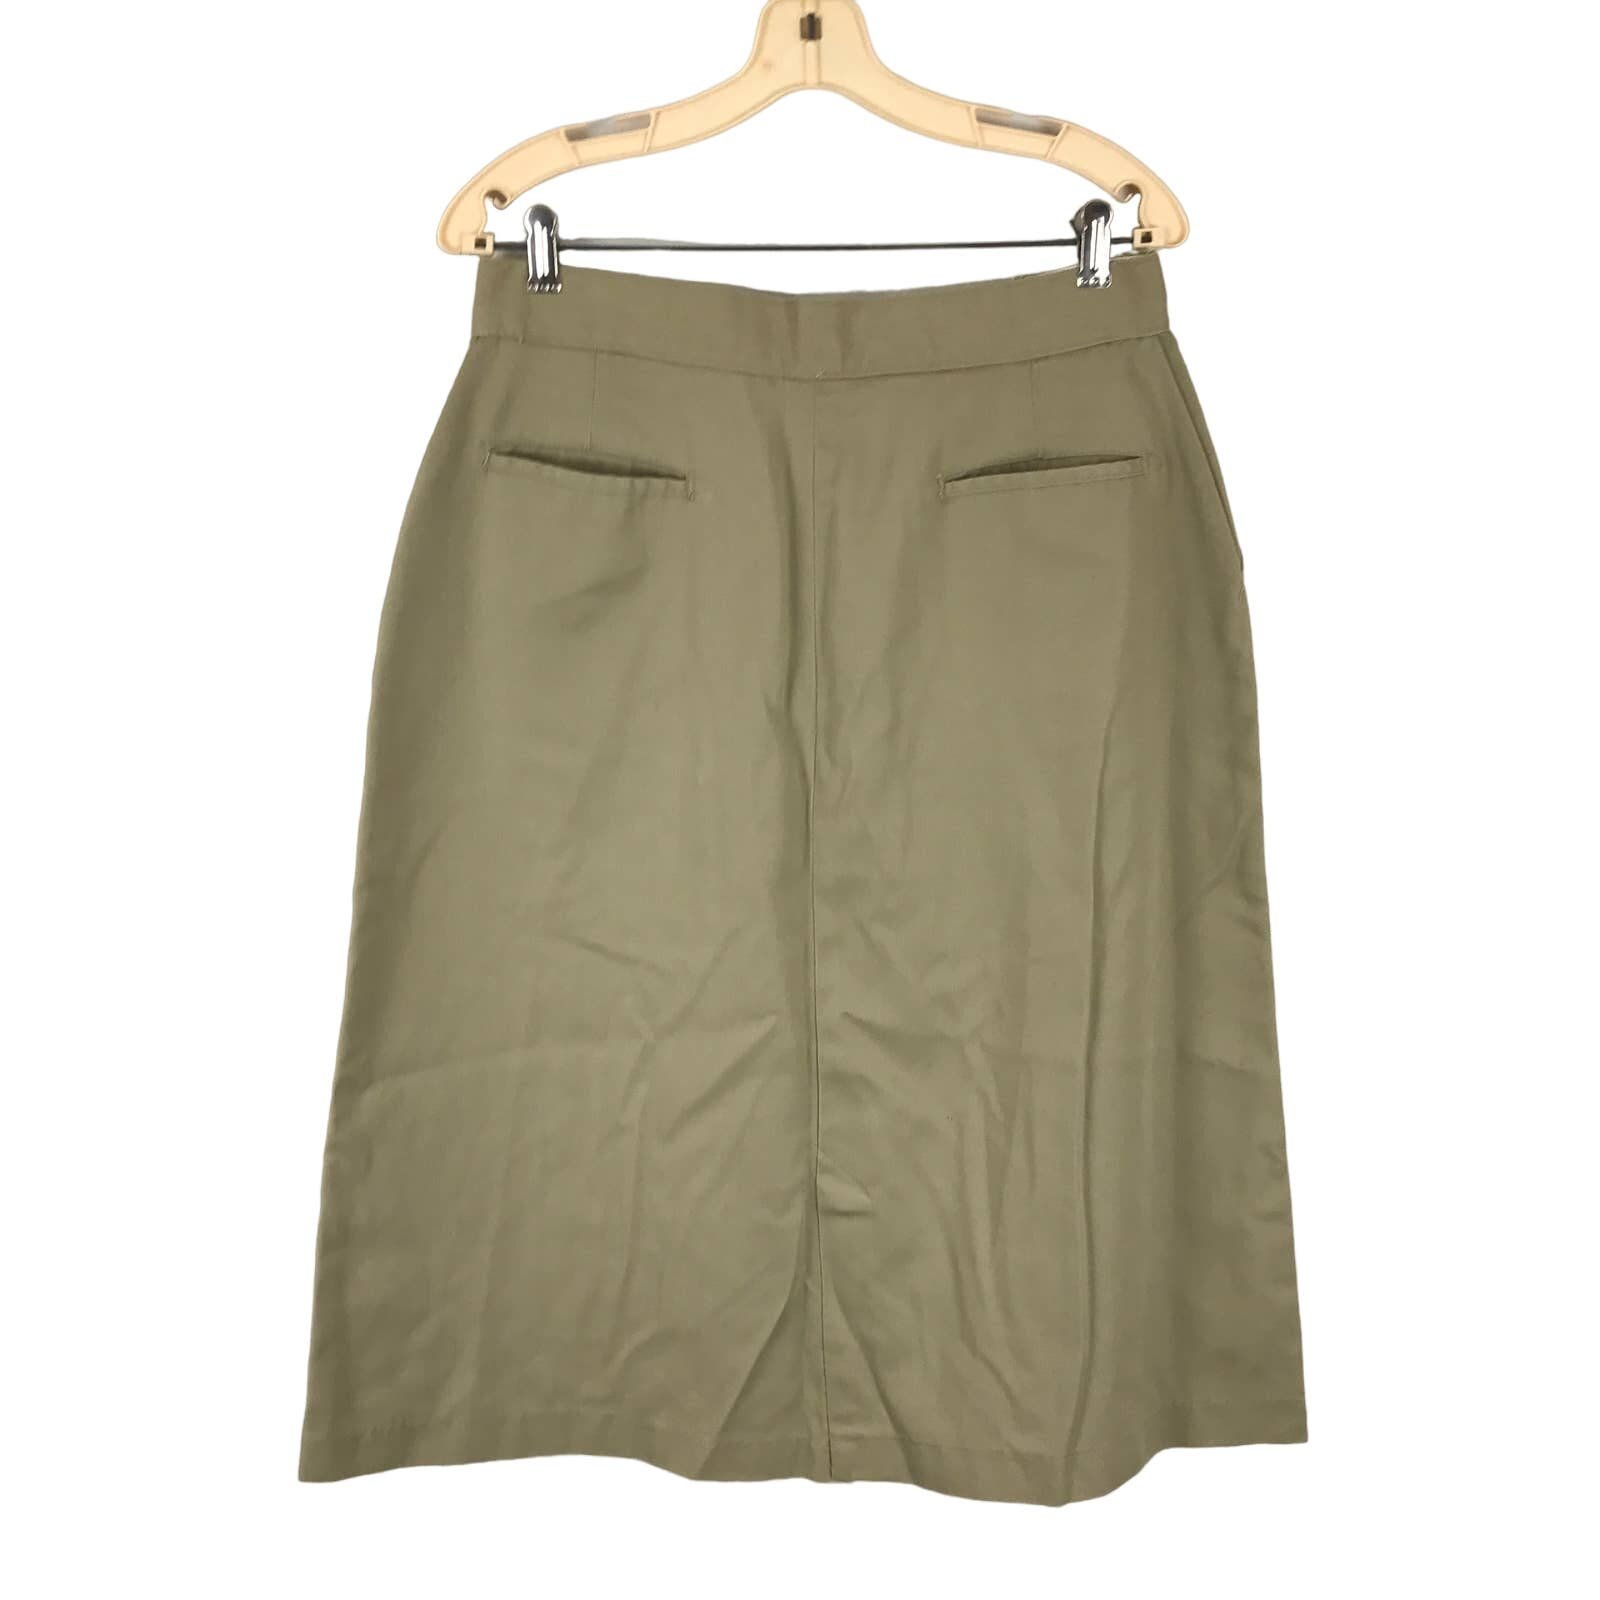 Wholesale price L.L.Bean Khaki Straight Midi Skirt US SZ 10/12 pmhJyZHiy outlet online shop